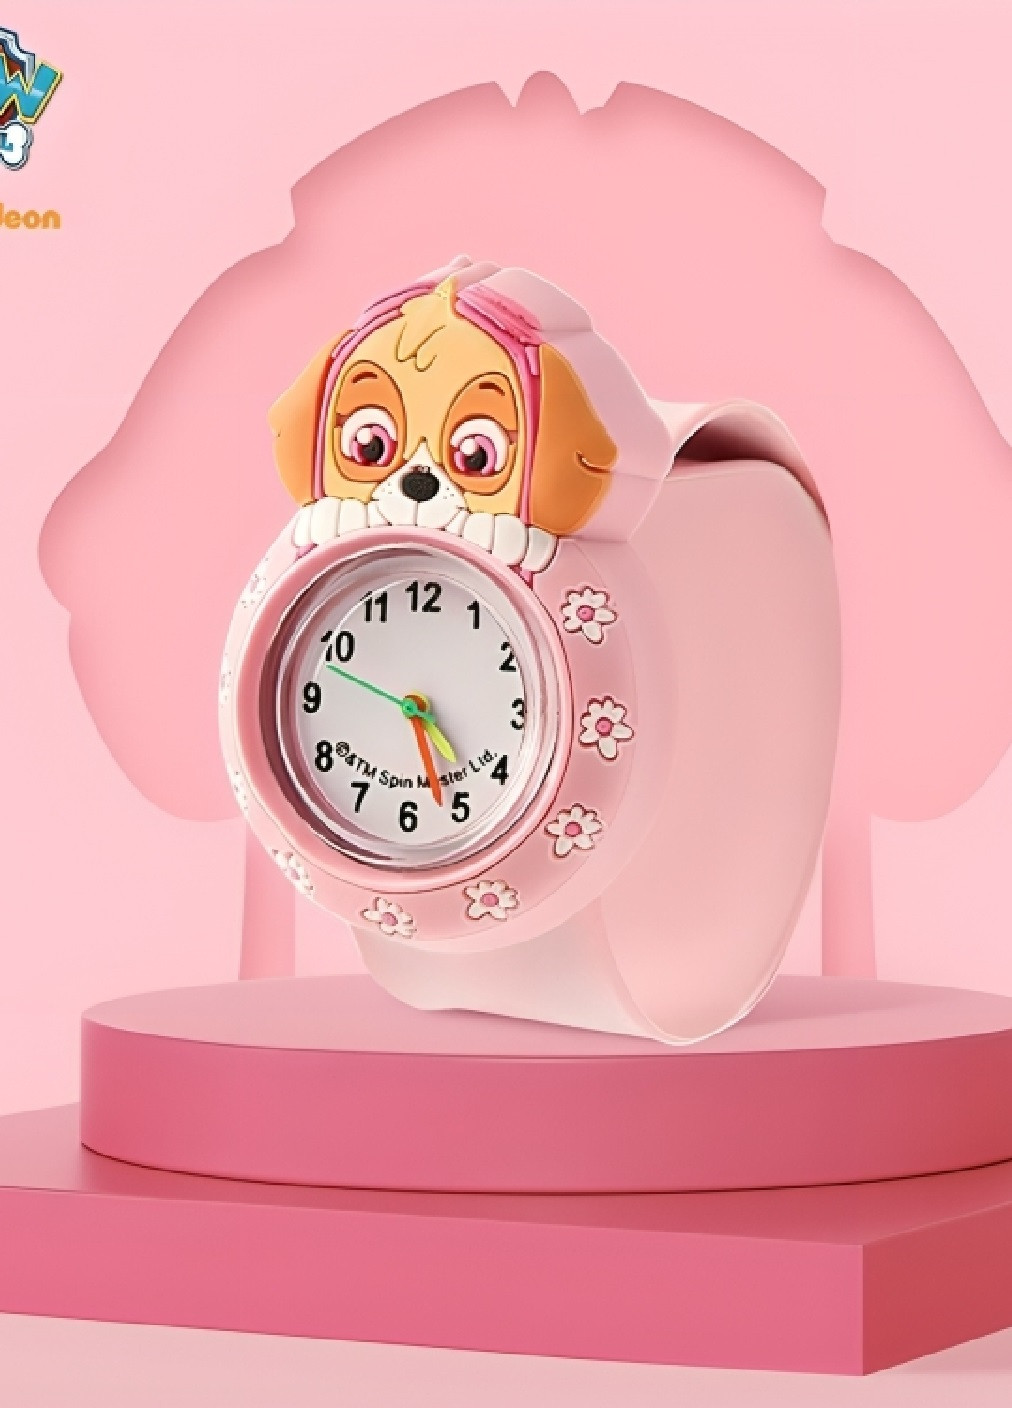 Дитячий наручний годинник для дітей дівчаток хлопчиків з персонажем Скай щенячий патруль (476077-Prob) Рожевий Unbranded (276249309)